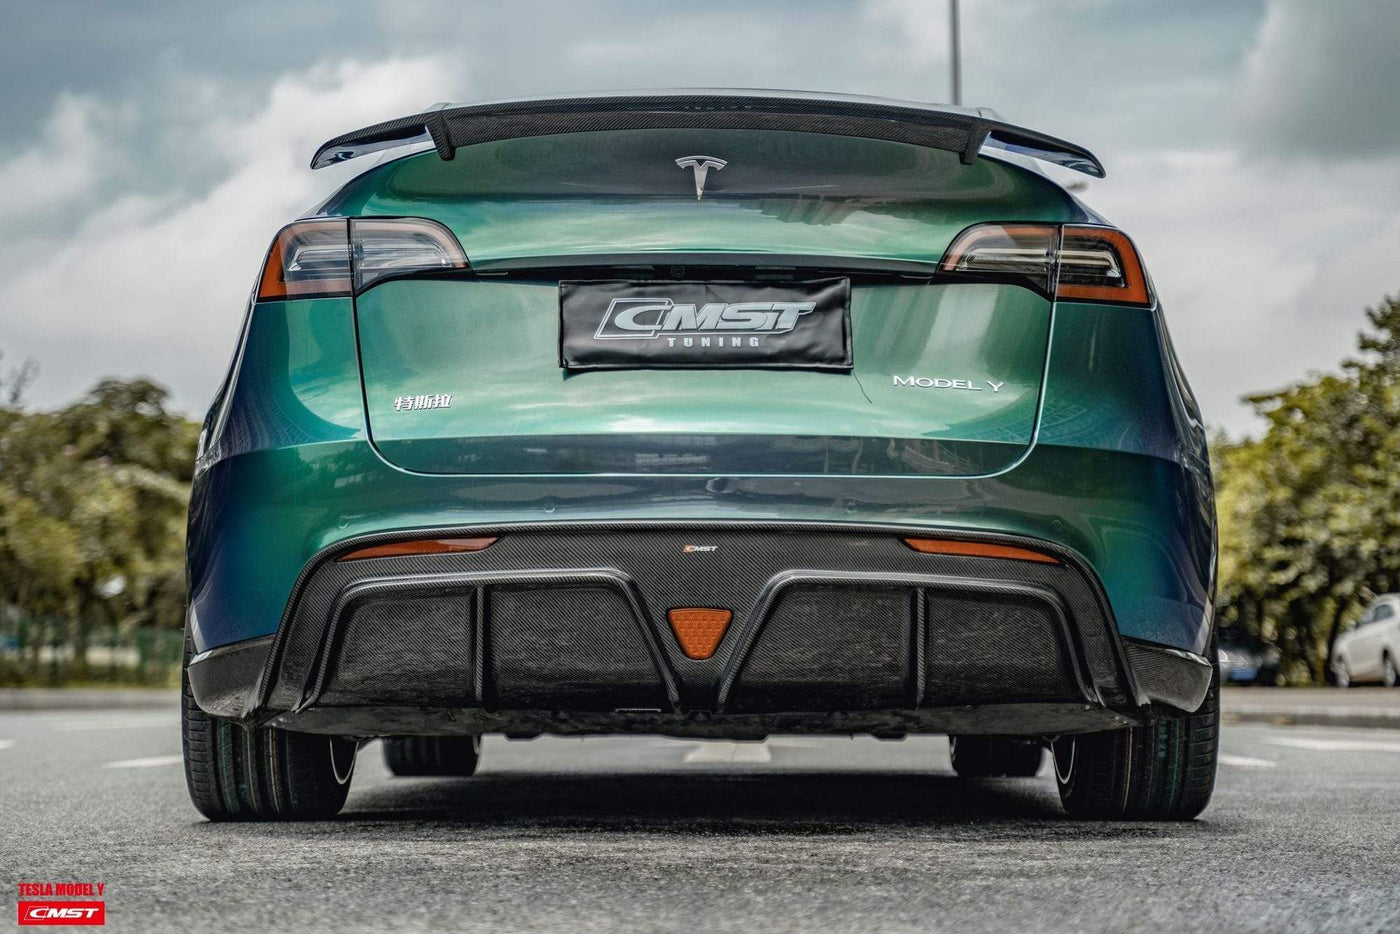 CMST Genuine Carbon Fiber Body Kit for Tesla Model Y 2020-2023